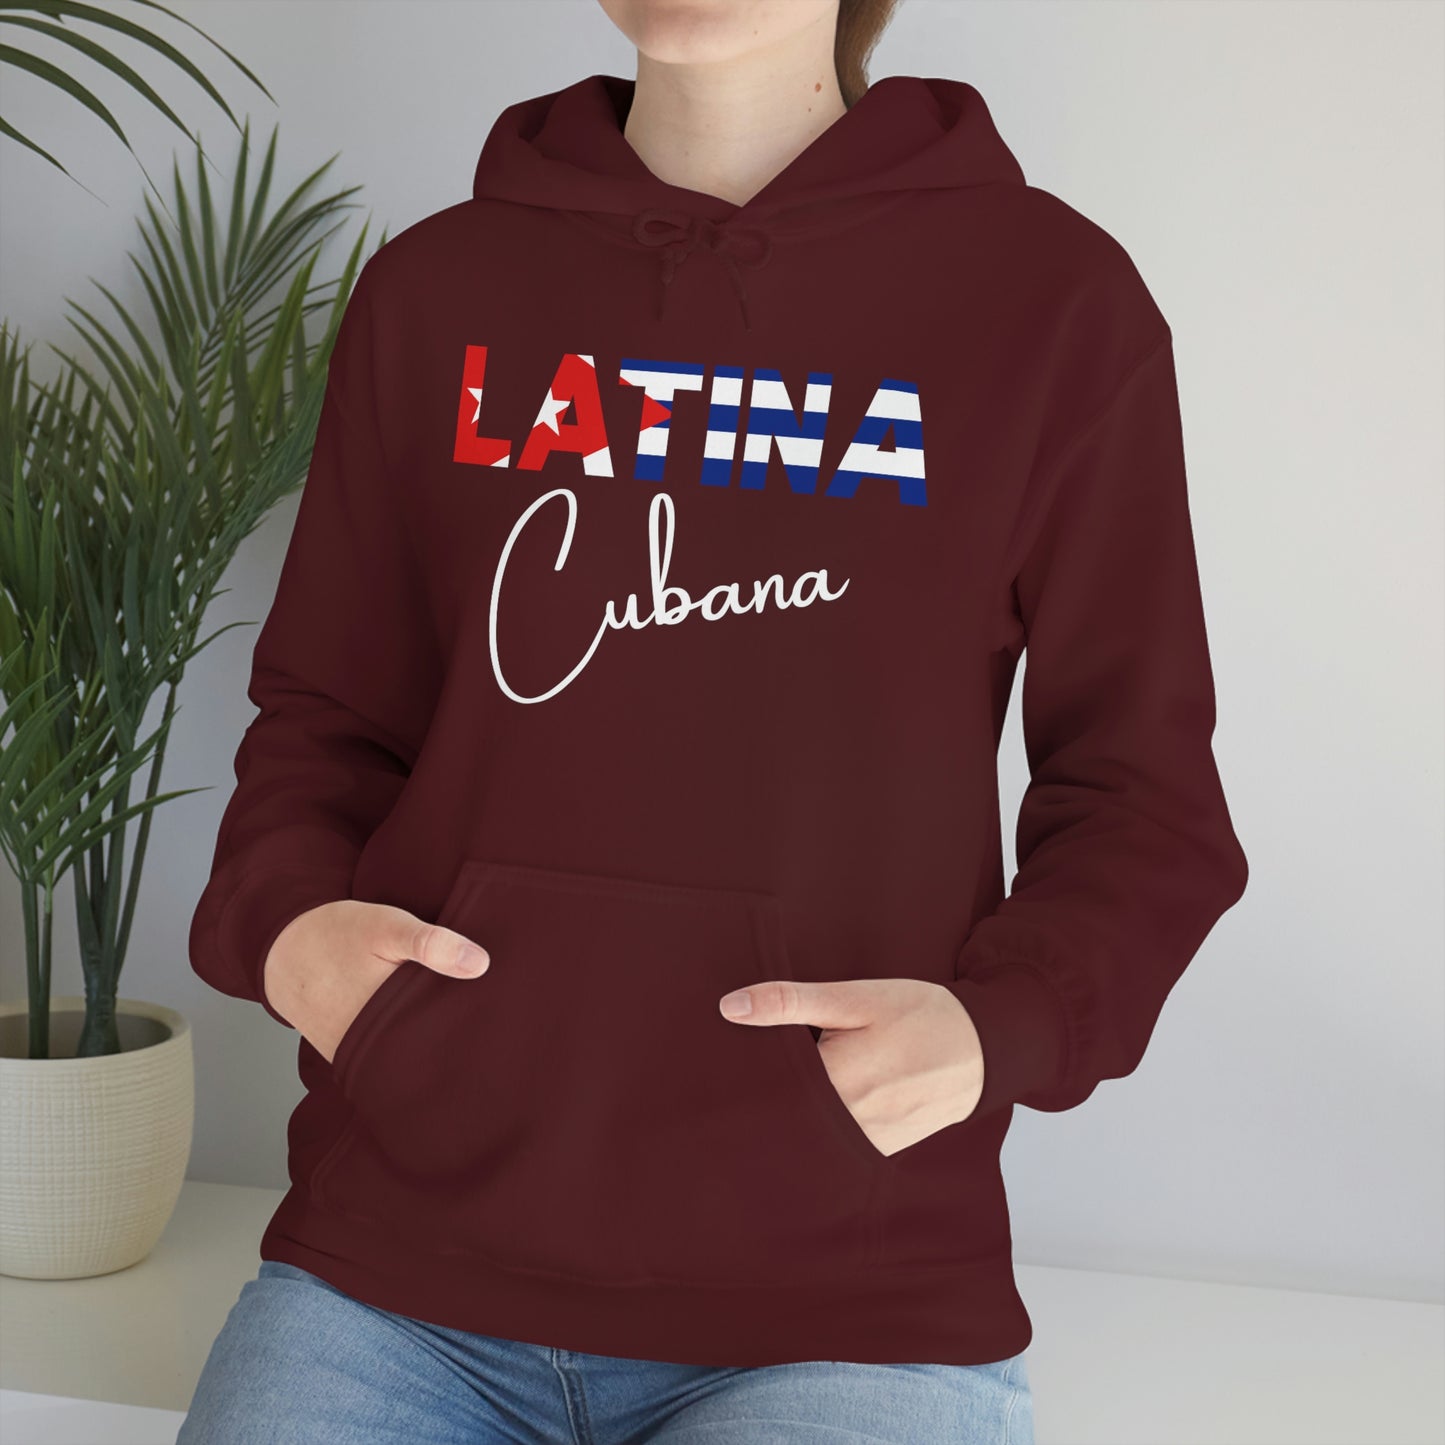 Latina Cubana, Hoodie